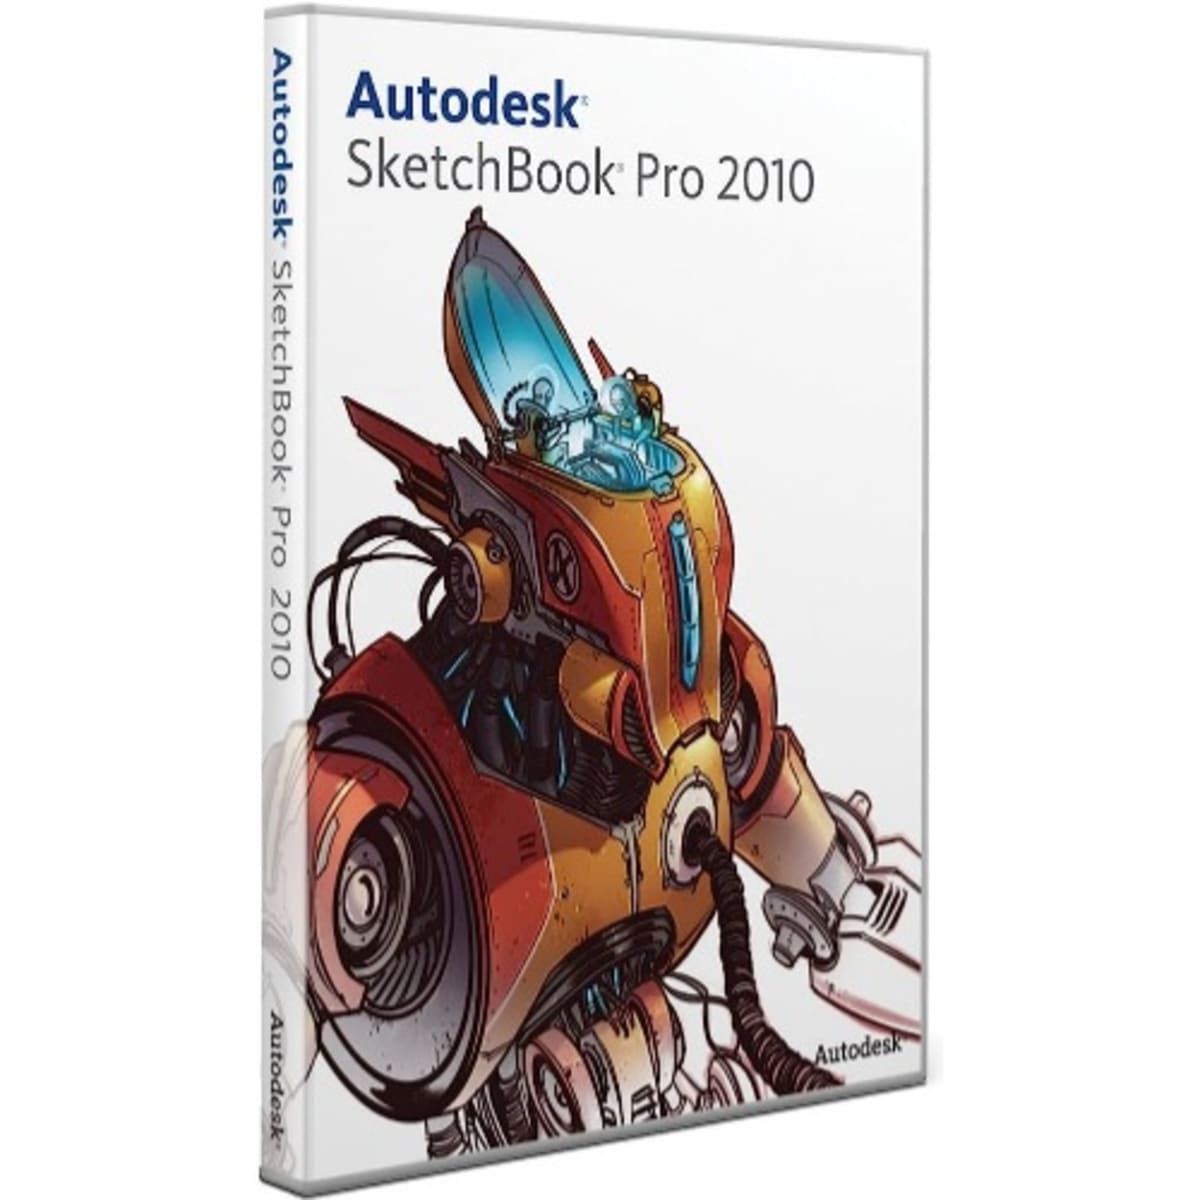 Autodesk Sketchbook Pro Mod Apk v5.2.5 Download For Android